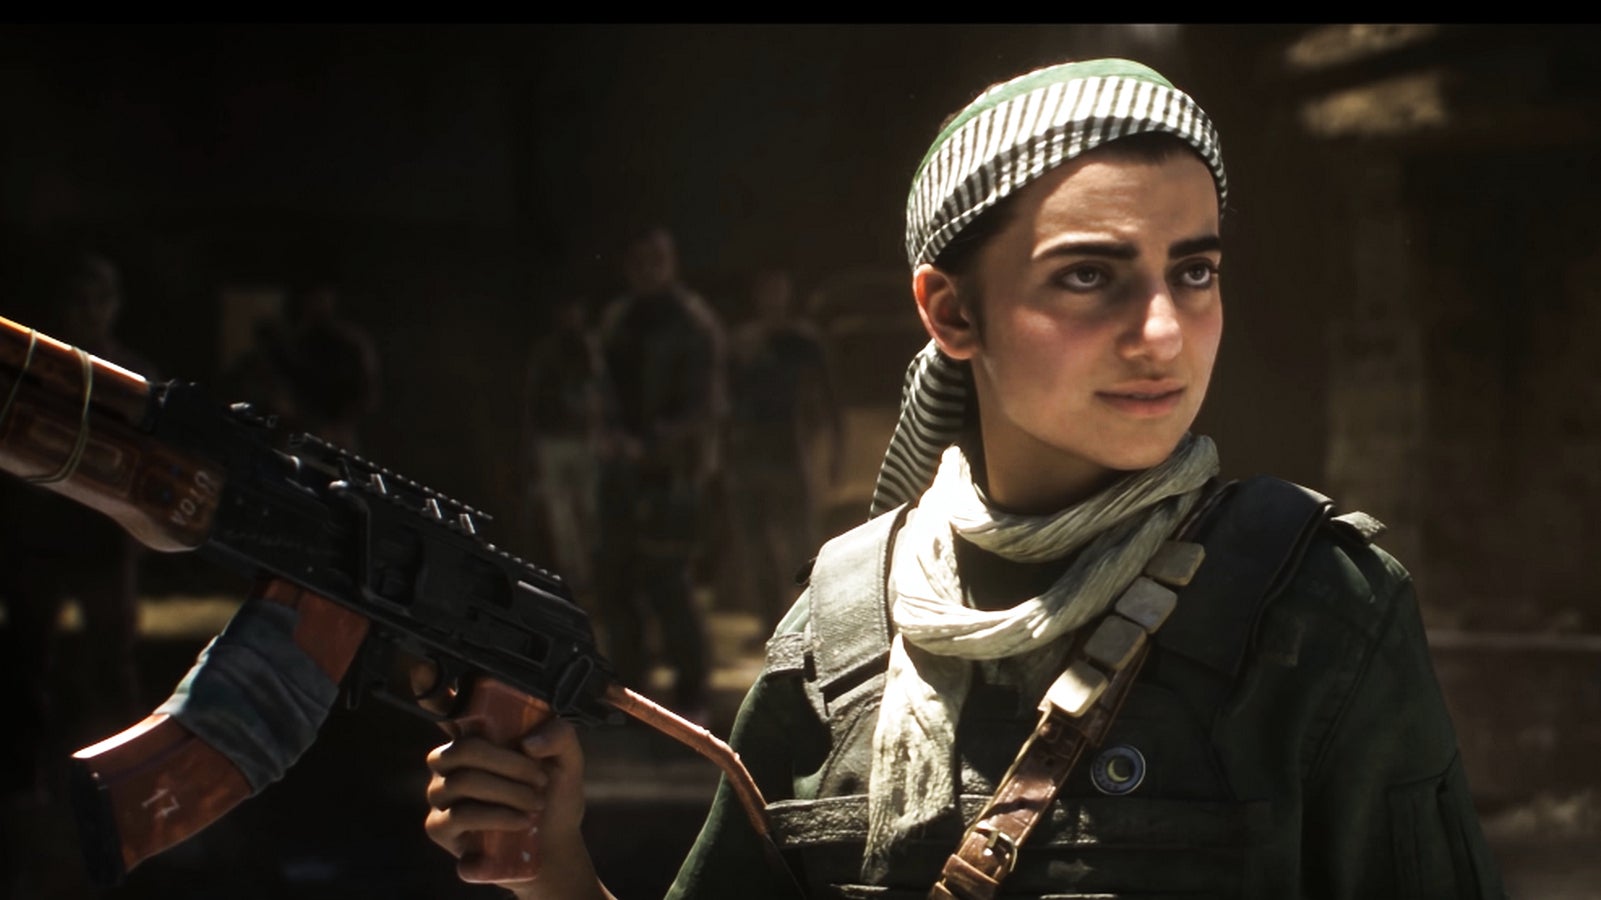 Bilder zu Neues Call of Duty: Modern Warfare von Infinity Ward und neues "Warzone-Erlebnis" bestätigt